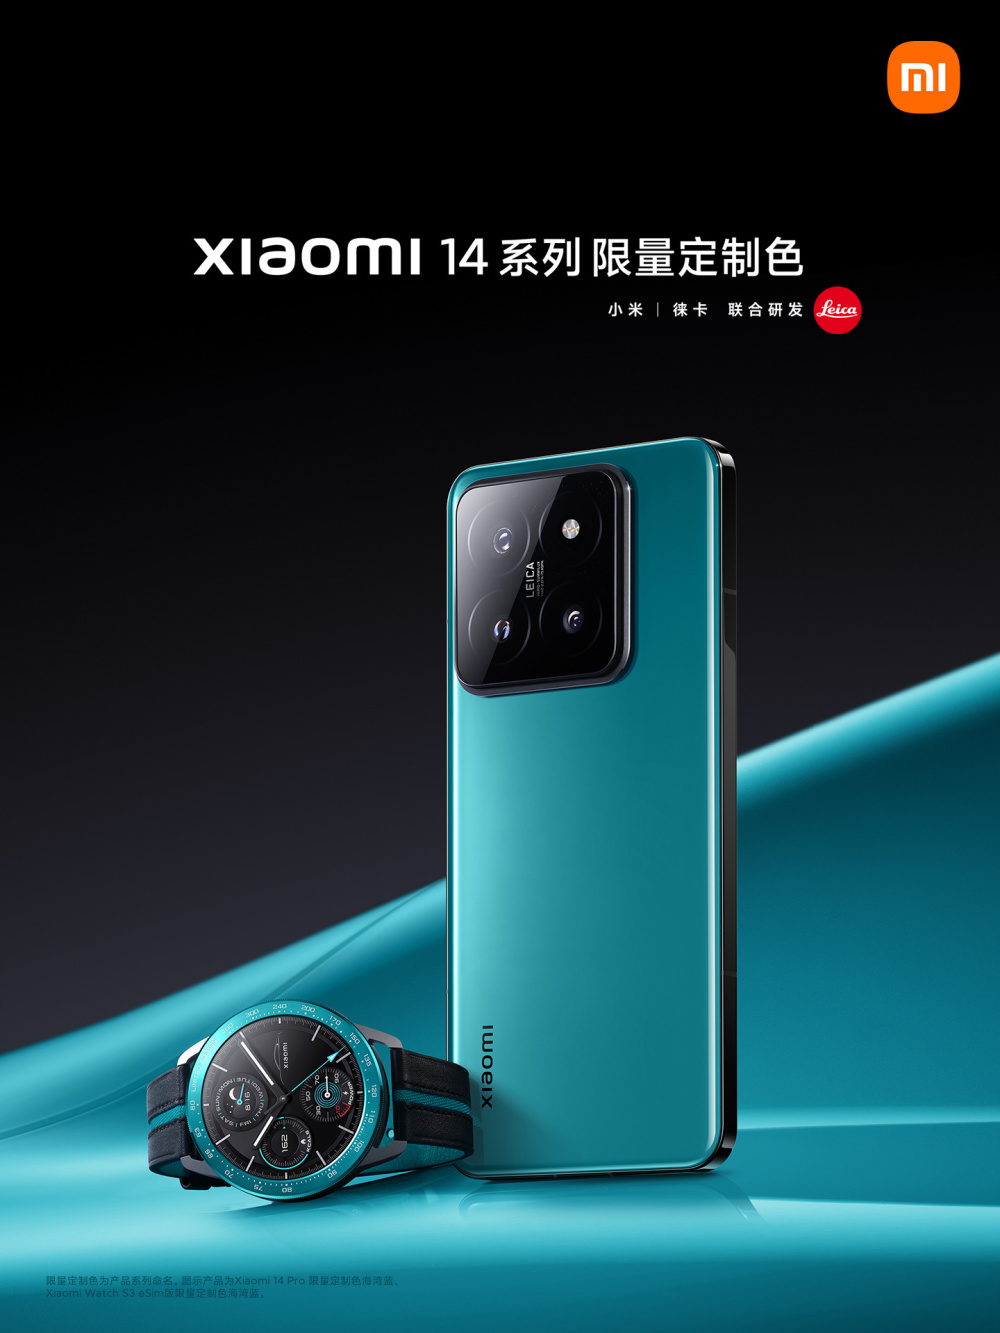 小米 14 手机、手表 S3 限量定制色发布，采用 Su7 汽车同款配色腾讯新闻 9303